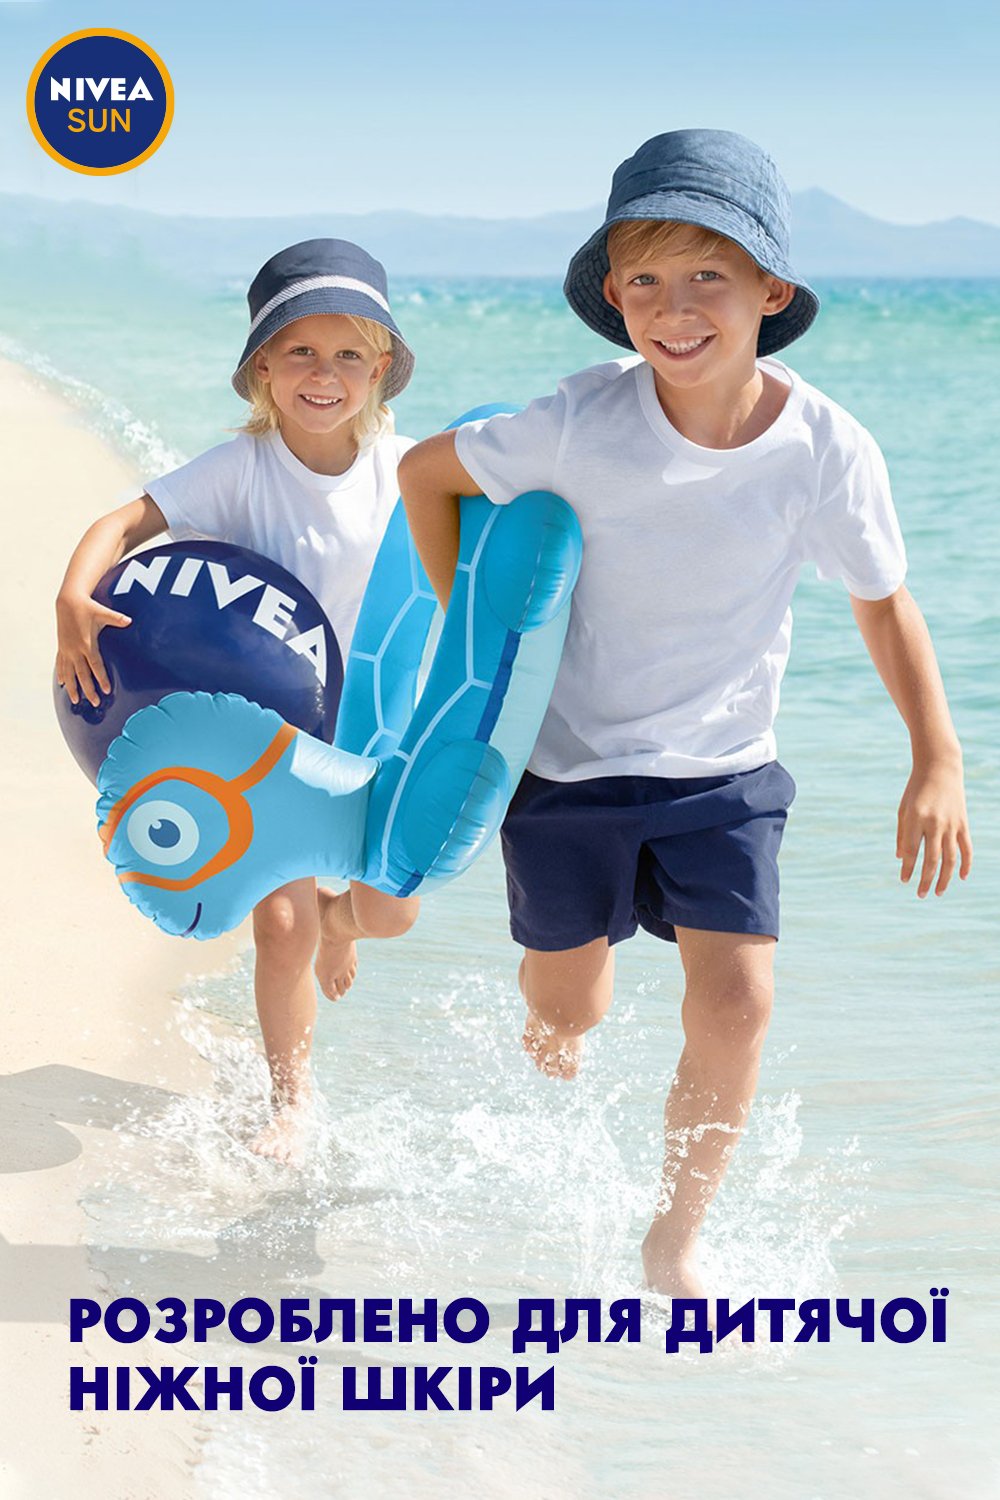 Детский солнцезащитный спрей Nivea Sun Играй и купайся, SPF 30, 200 мл - фото 9